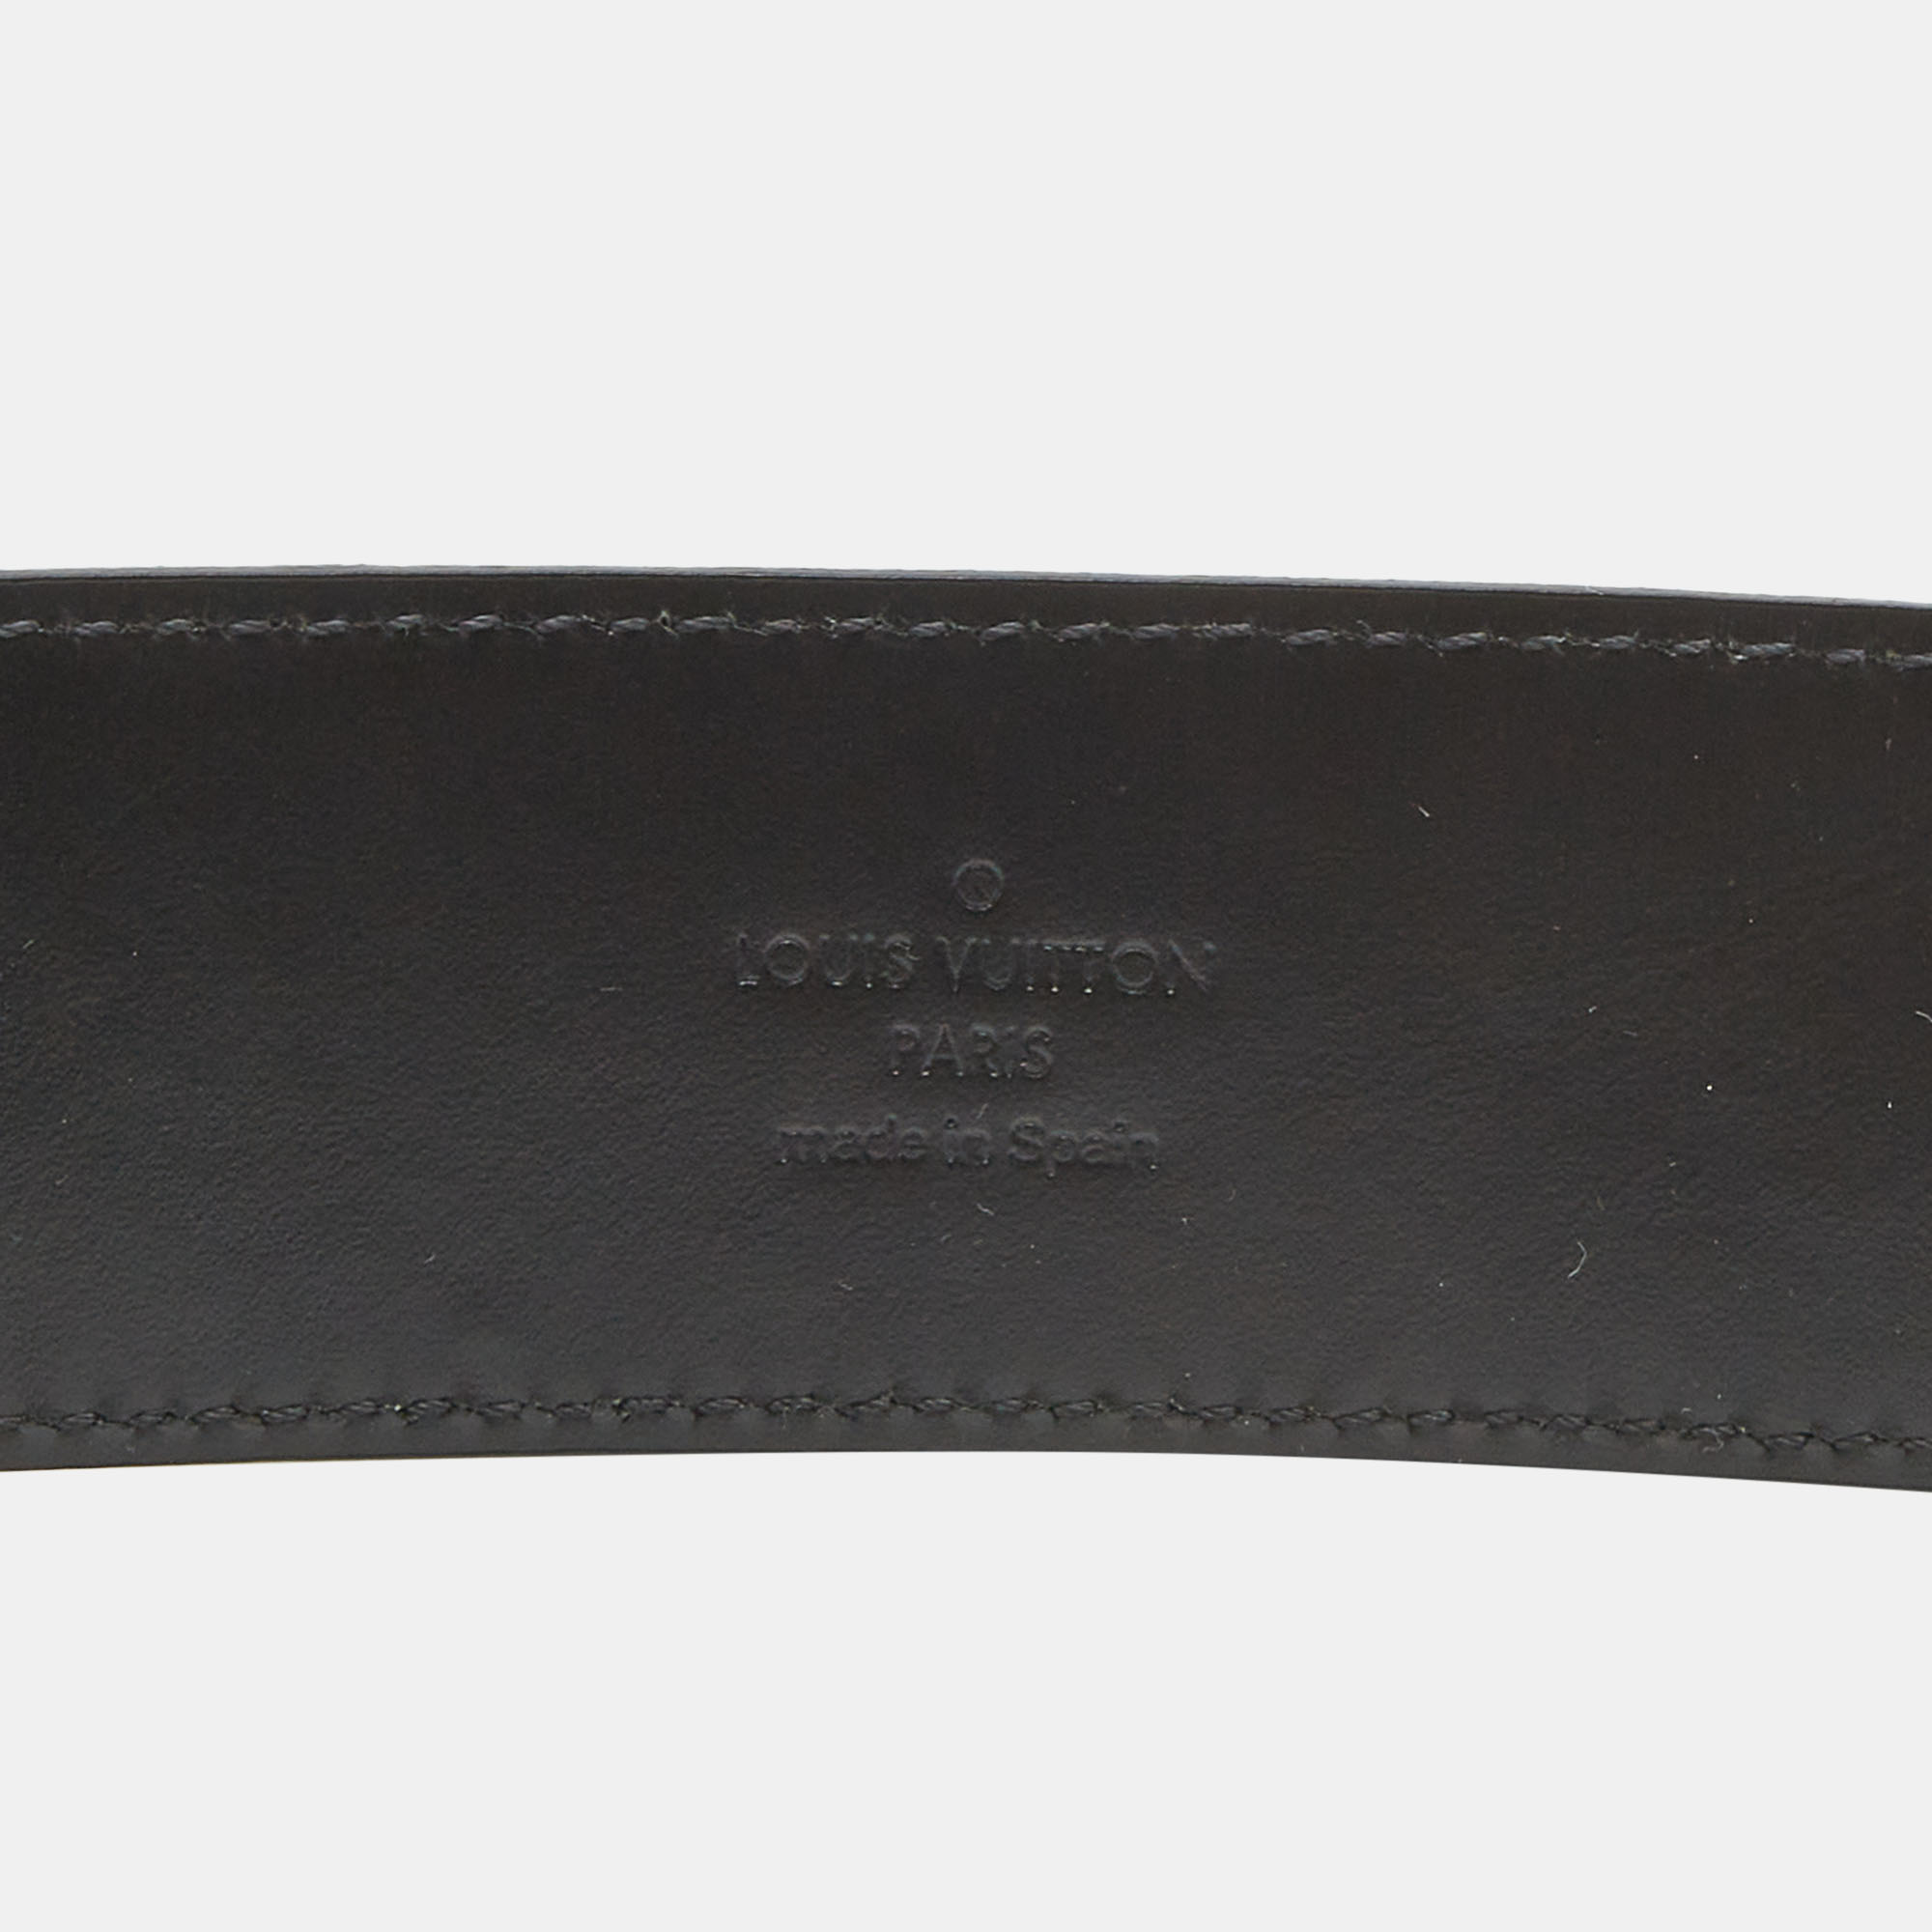 Initiales Mens Belt Damier Graphite 110cm Louisb Vuittonack Belts 